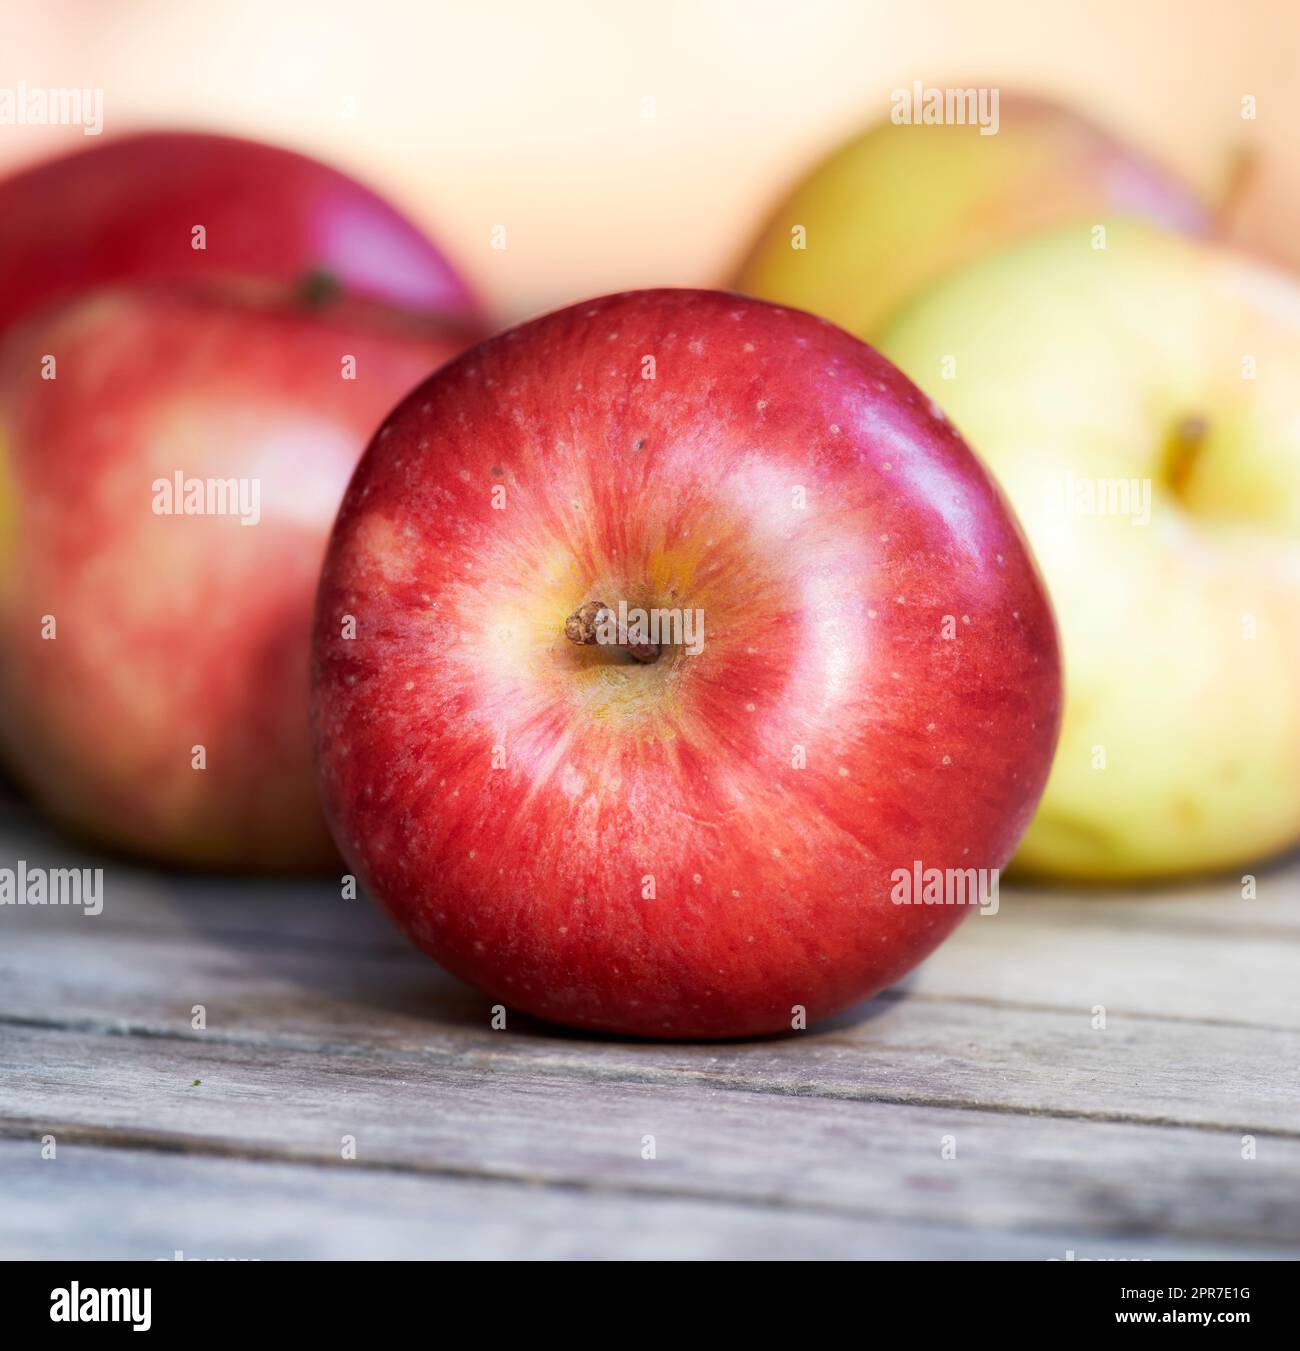 Nahaufnahme frischer roter Äpfel auf einem Tisch. Köstliche und biologische Früchte, die nach der Reife und in der Saison gepflückt werden, um sie mit Vitaminen für eine gesunde Immunität zu genießen. Nahrhafte Produkte für eine vegane oder vegetarische Ernährung Stockfoto